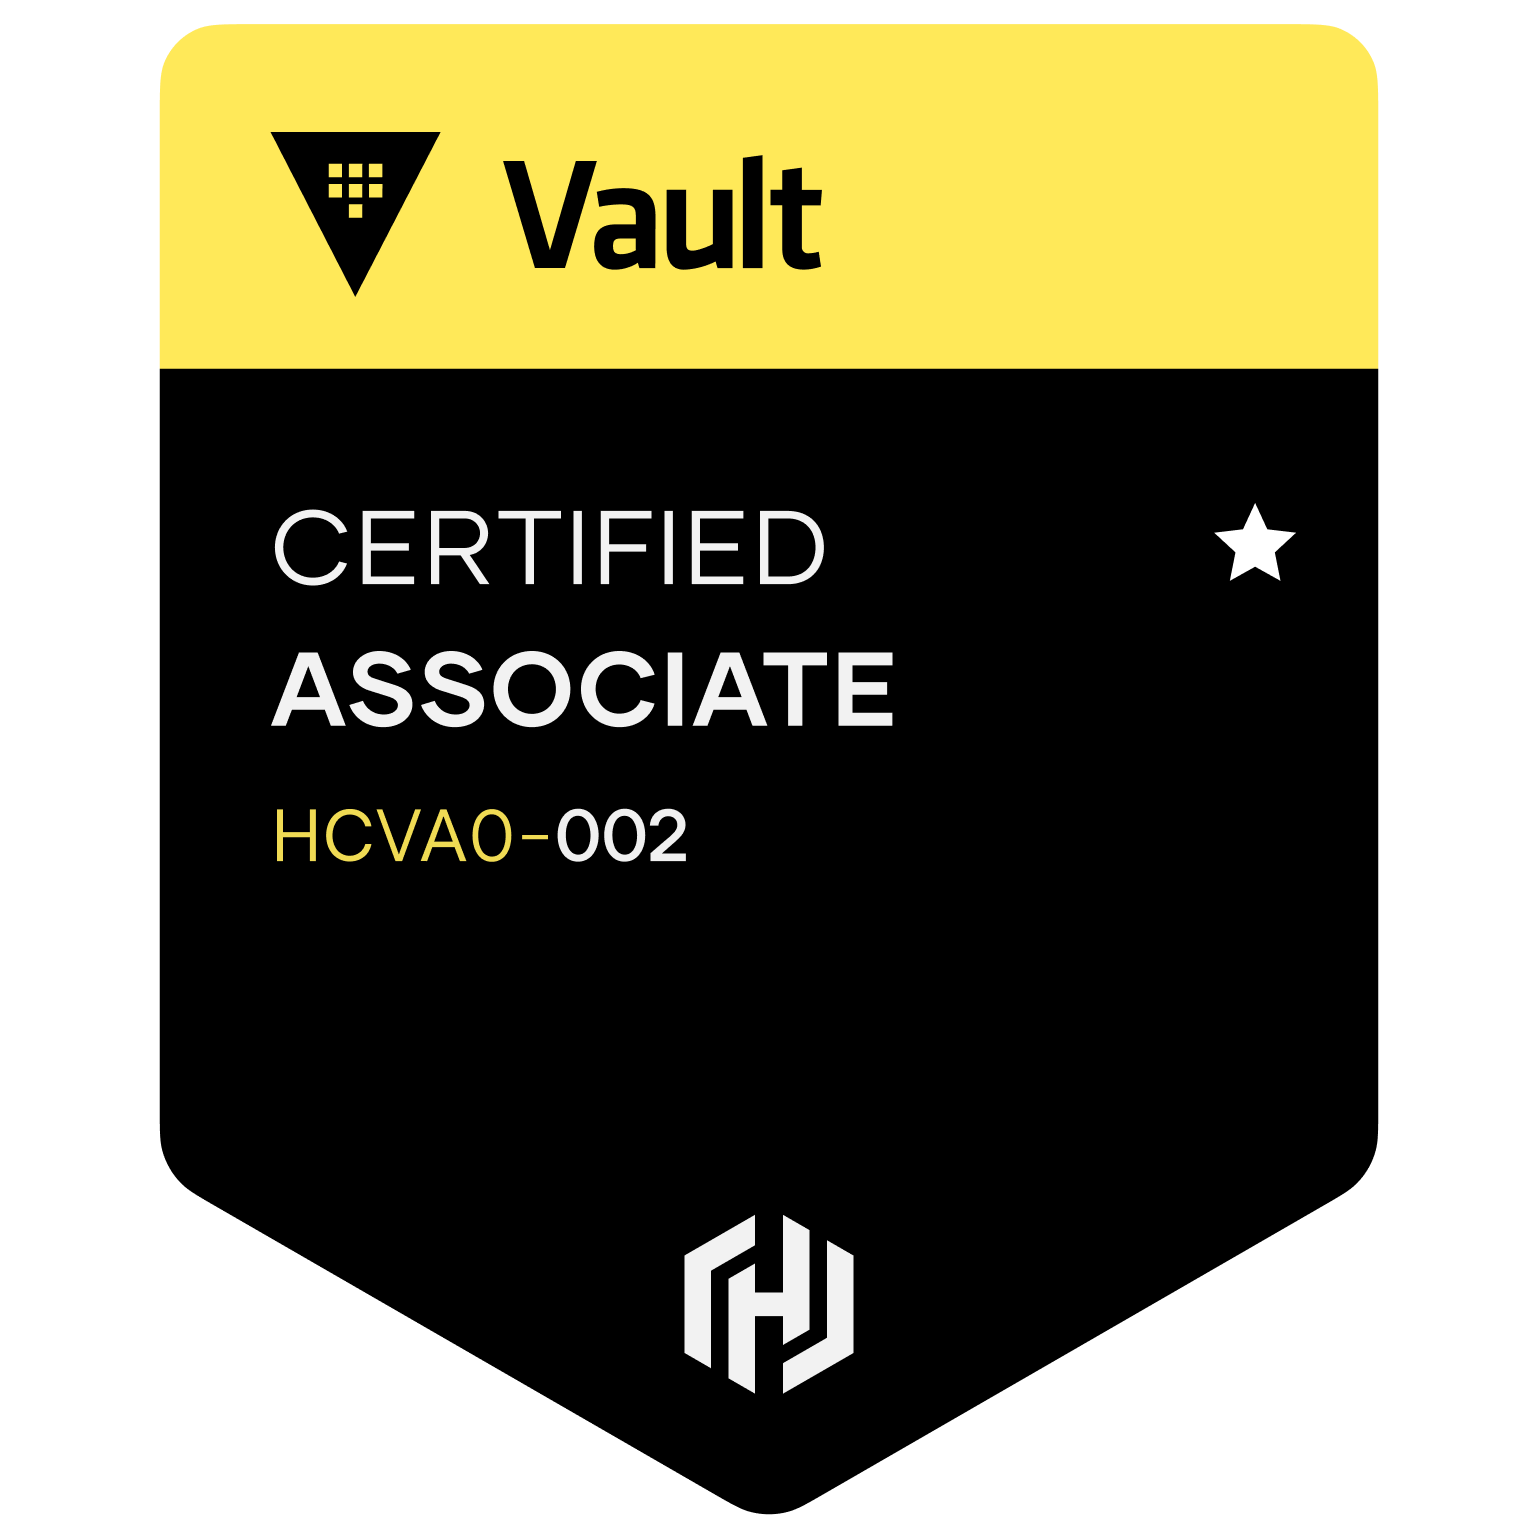 HashiCorp Certified: Vault Associate